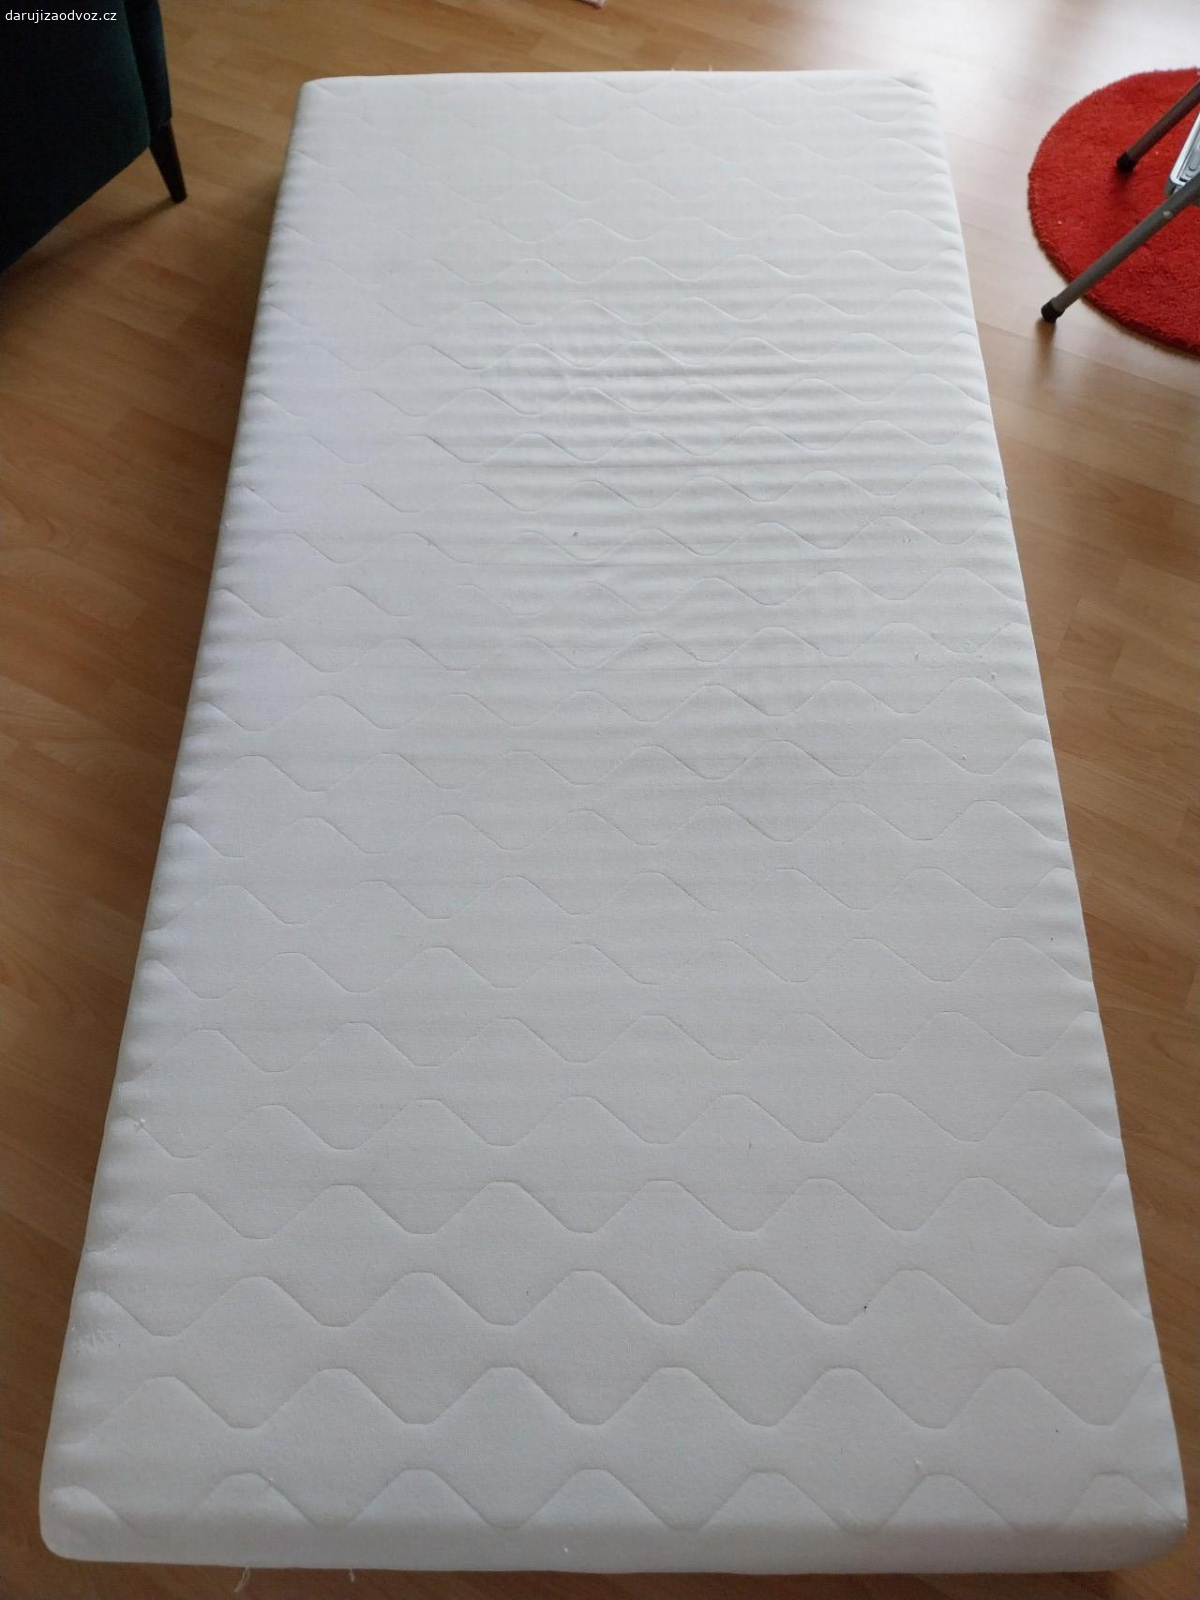 Matrace 100x200 cm. Daruji matraci použita, mírně prolezena, třeba ještě někdo využije pro pejska apod.